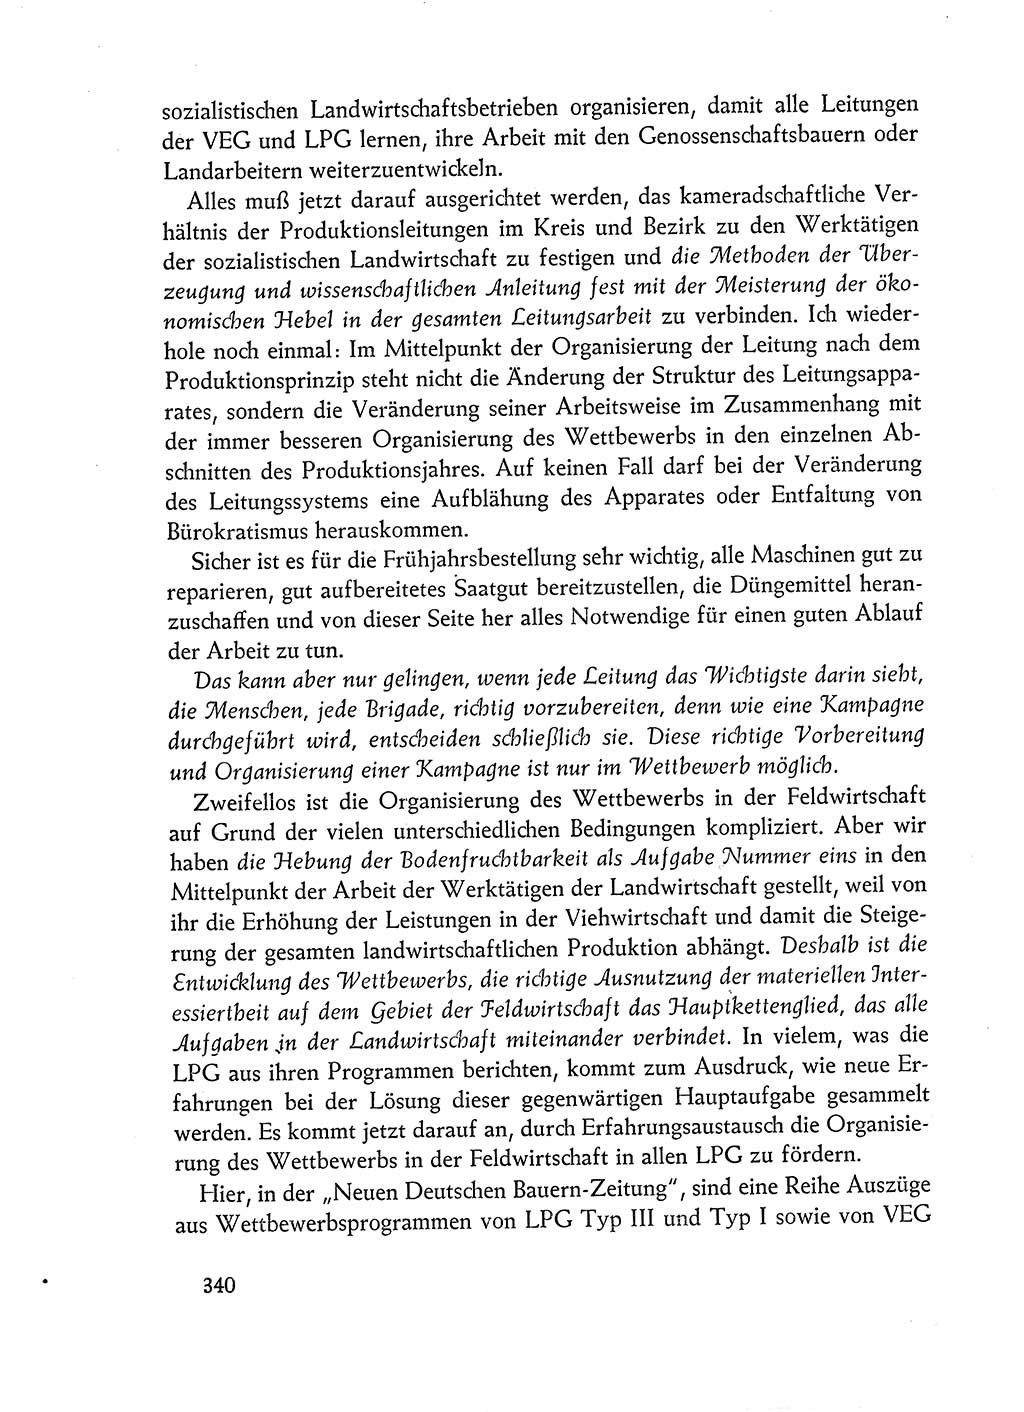 Dokumente der Sozialistischen Einheitspartei Deutschlands (SED) [Deutsche Demokratische Republik (DDR)] 1962-1963, Seite 340 (Dok. SED DDR 1962-1963, S. 340)